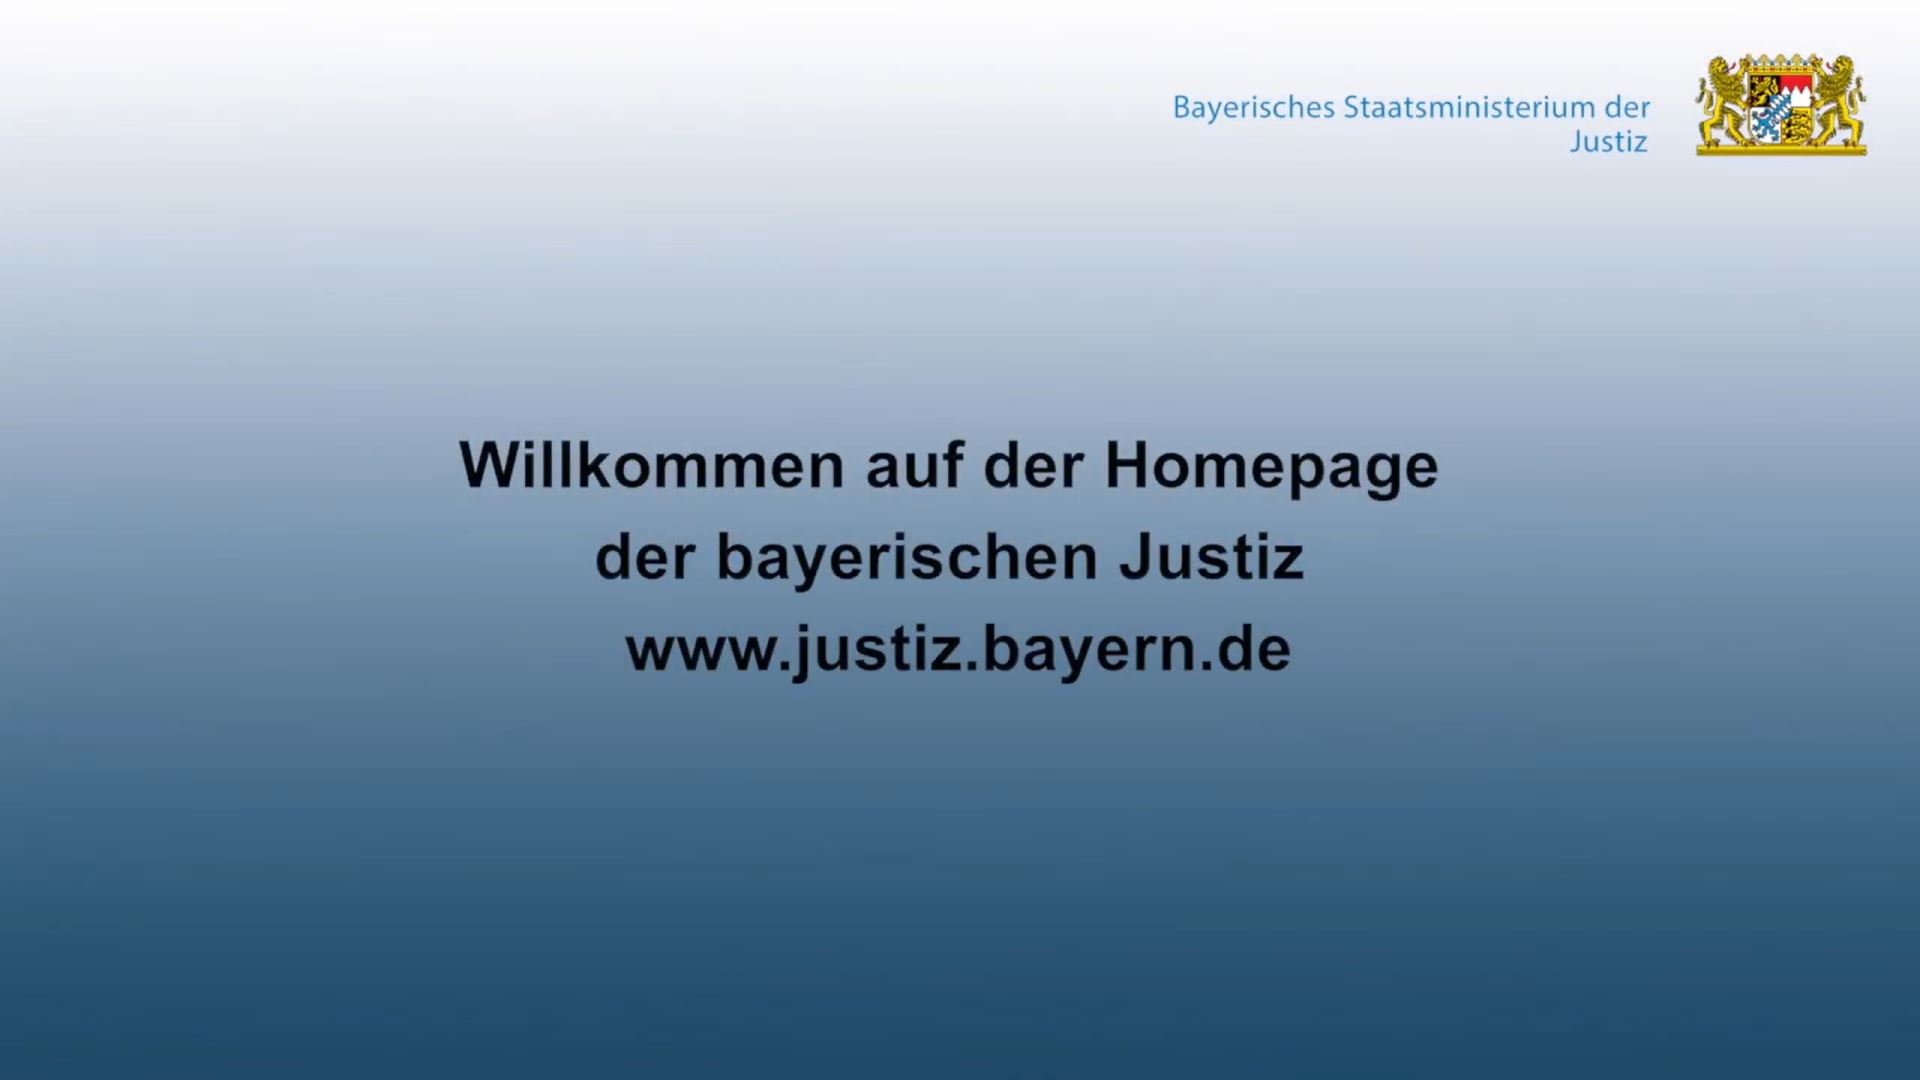 Das Video informiert über das Bayerische Staatsministerium der Justiz.